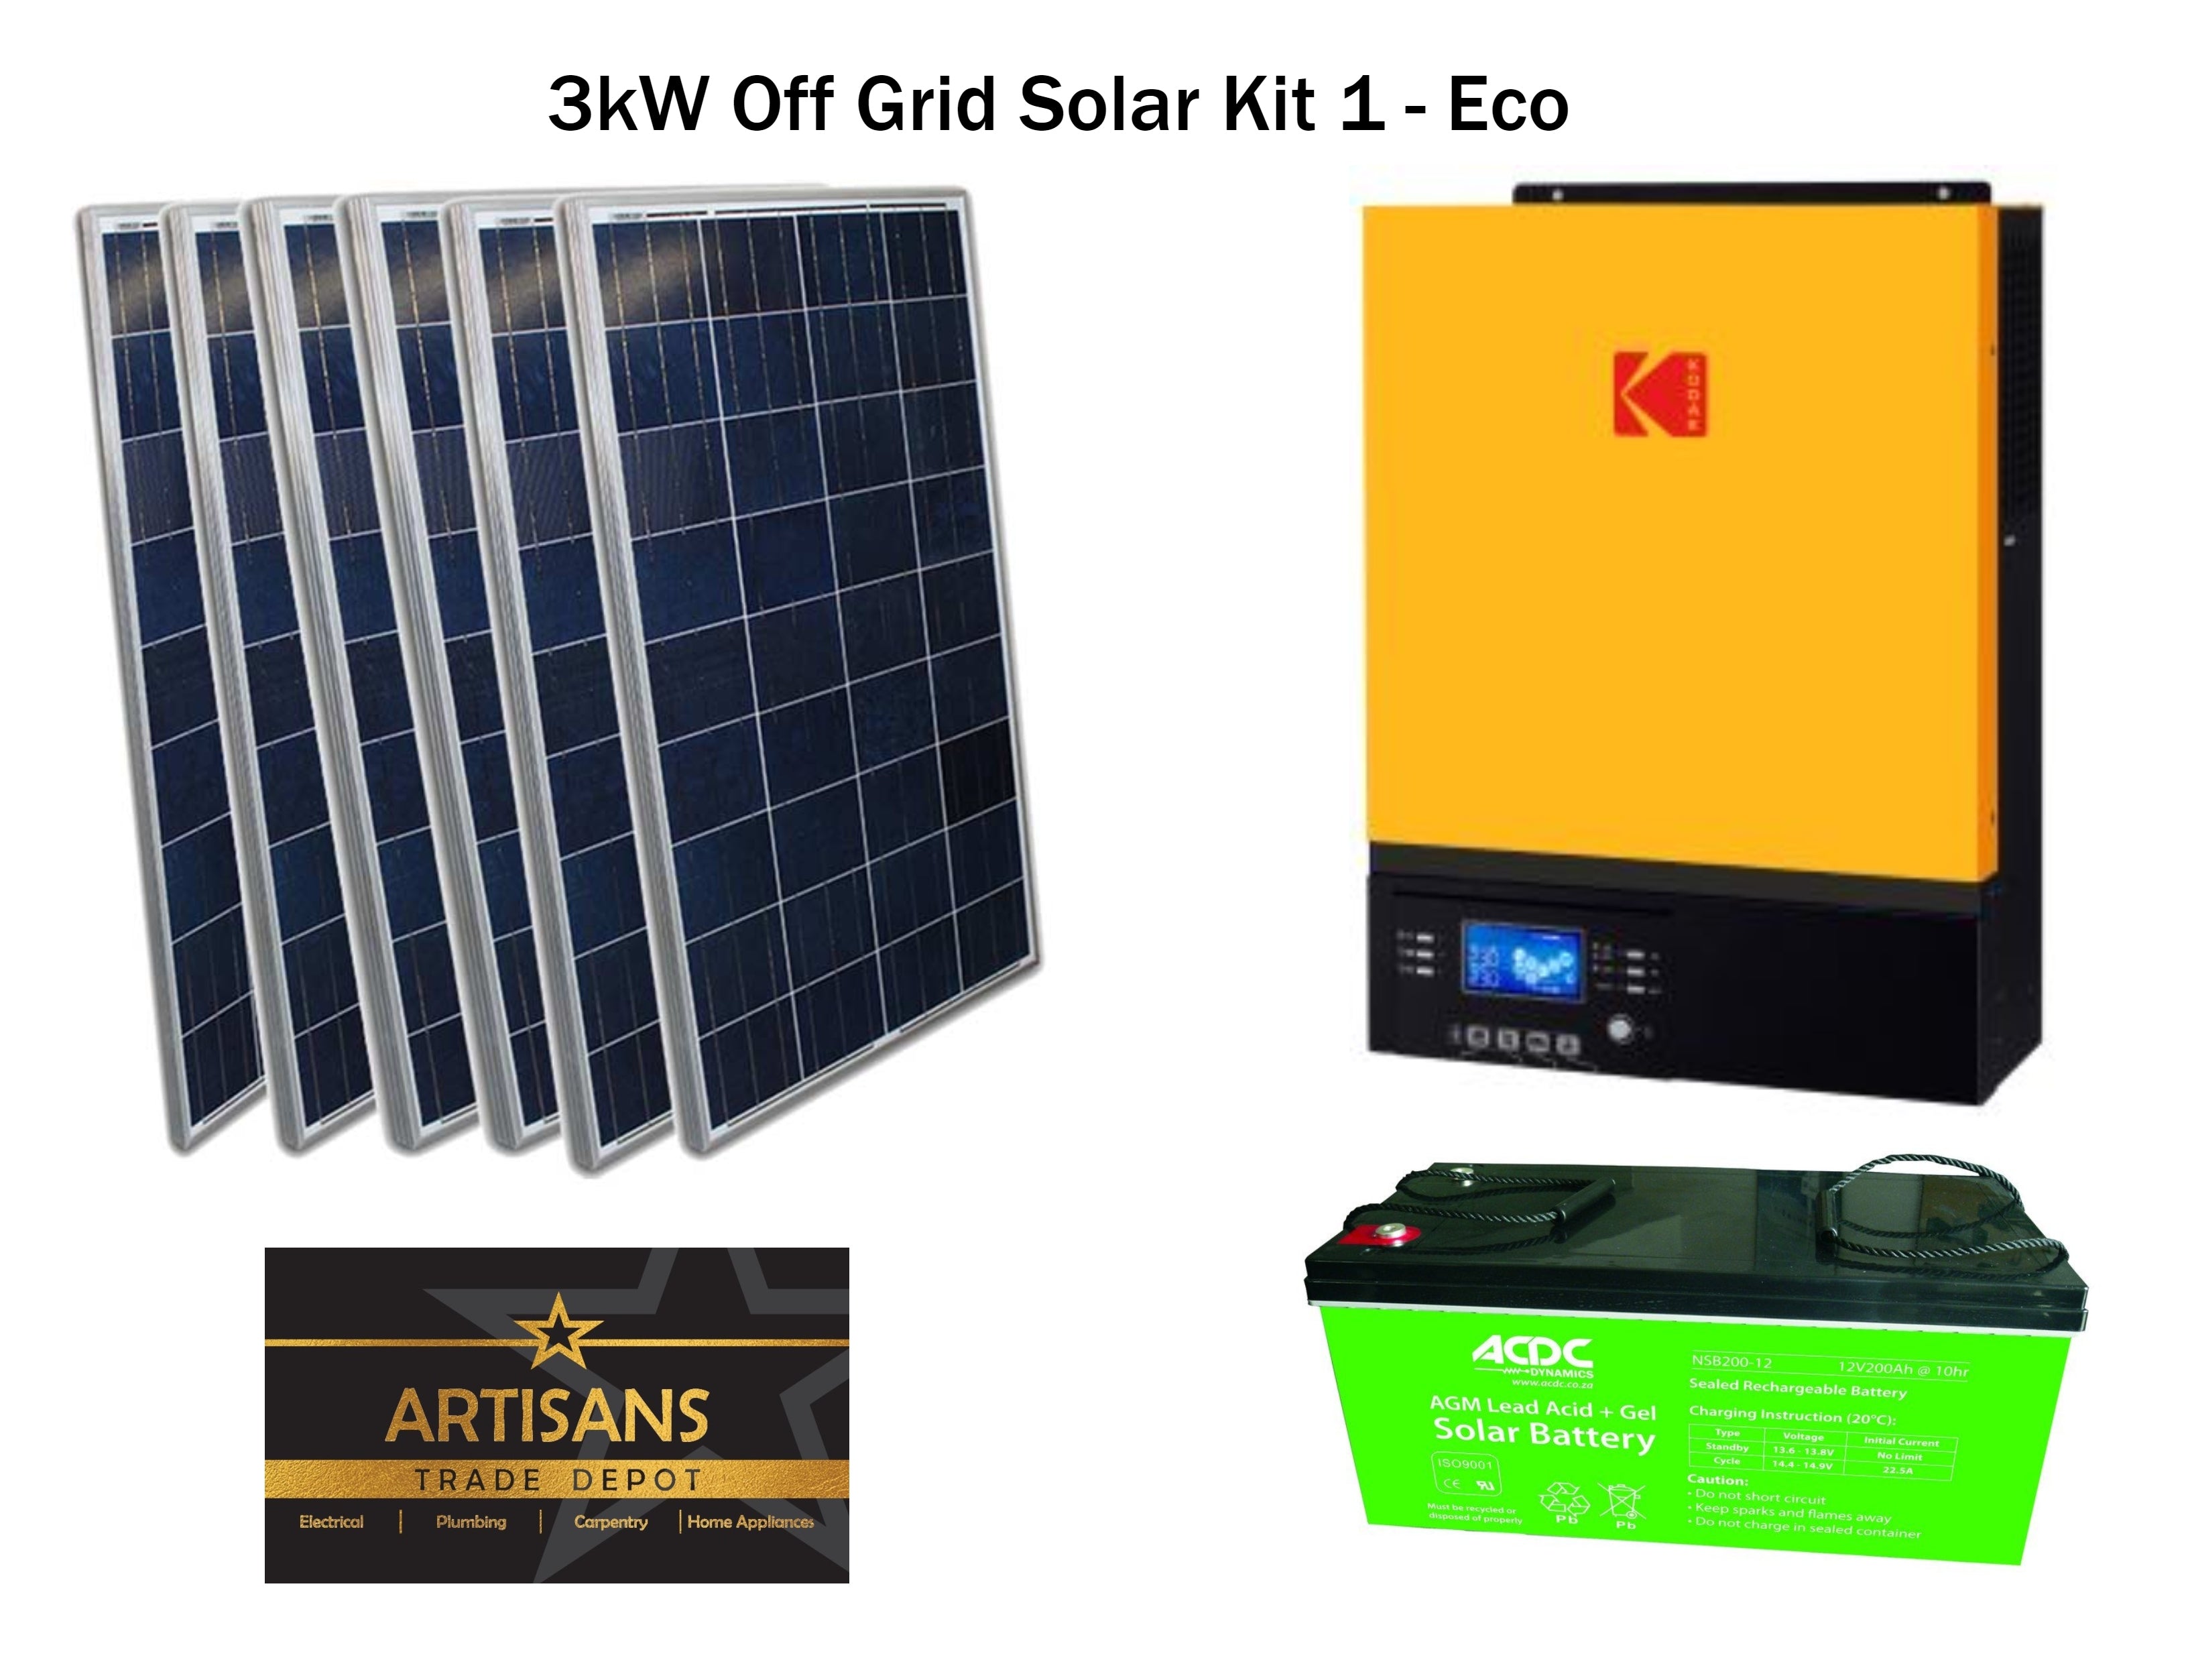 Solar kit 300Wp to 3600Wp + inverter-charger 230V 3000W MPPT - AGM  batteries - SOLAR KIT